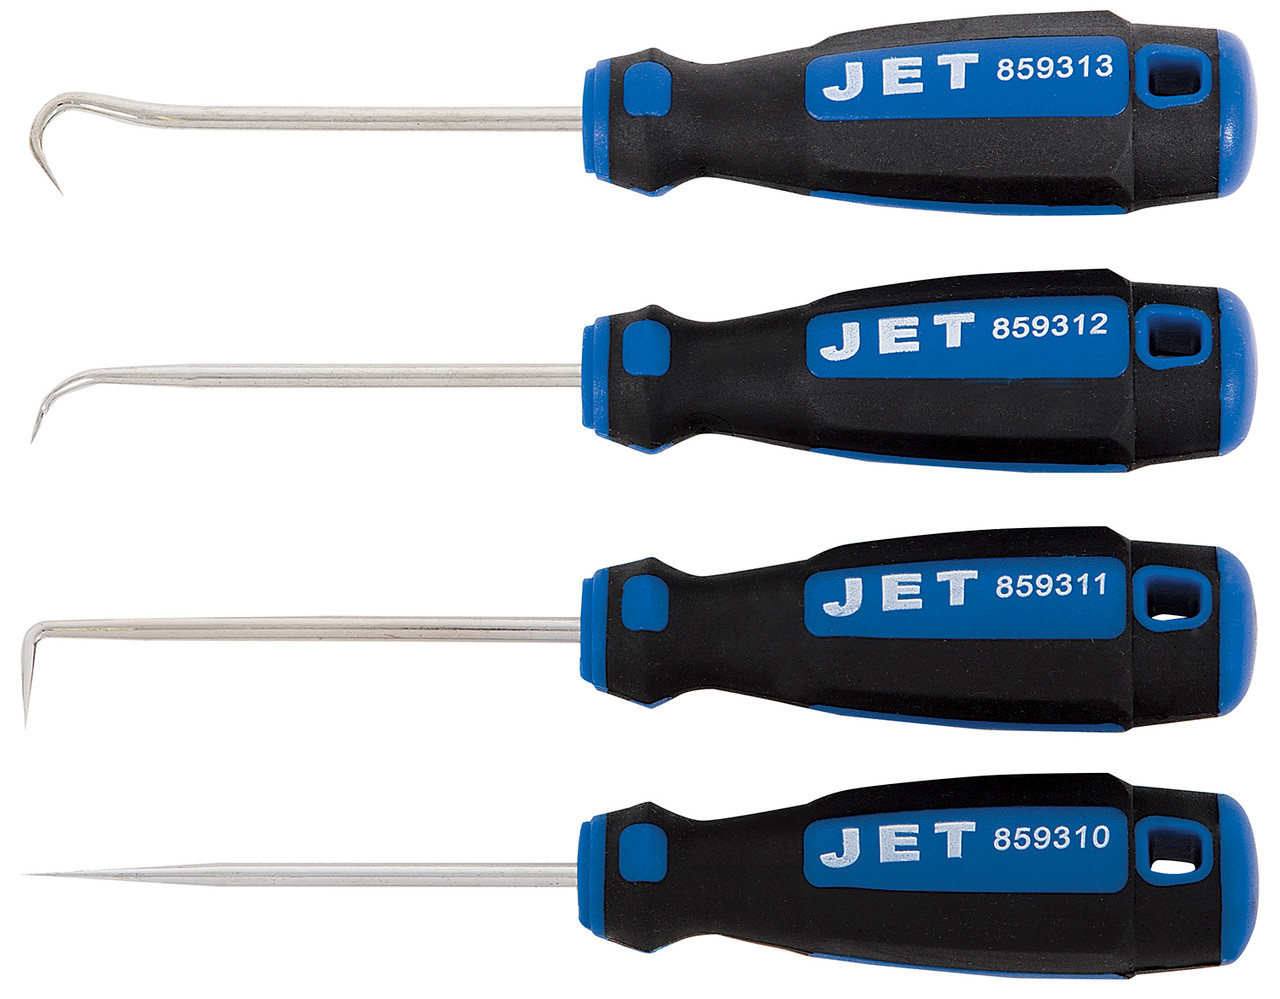 Jet 859301 - (JPHS-604) 4 PC 6 Ergonomic Pick and Hook Set